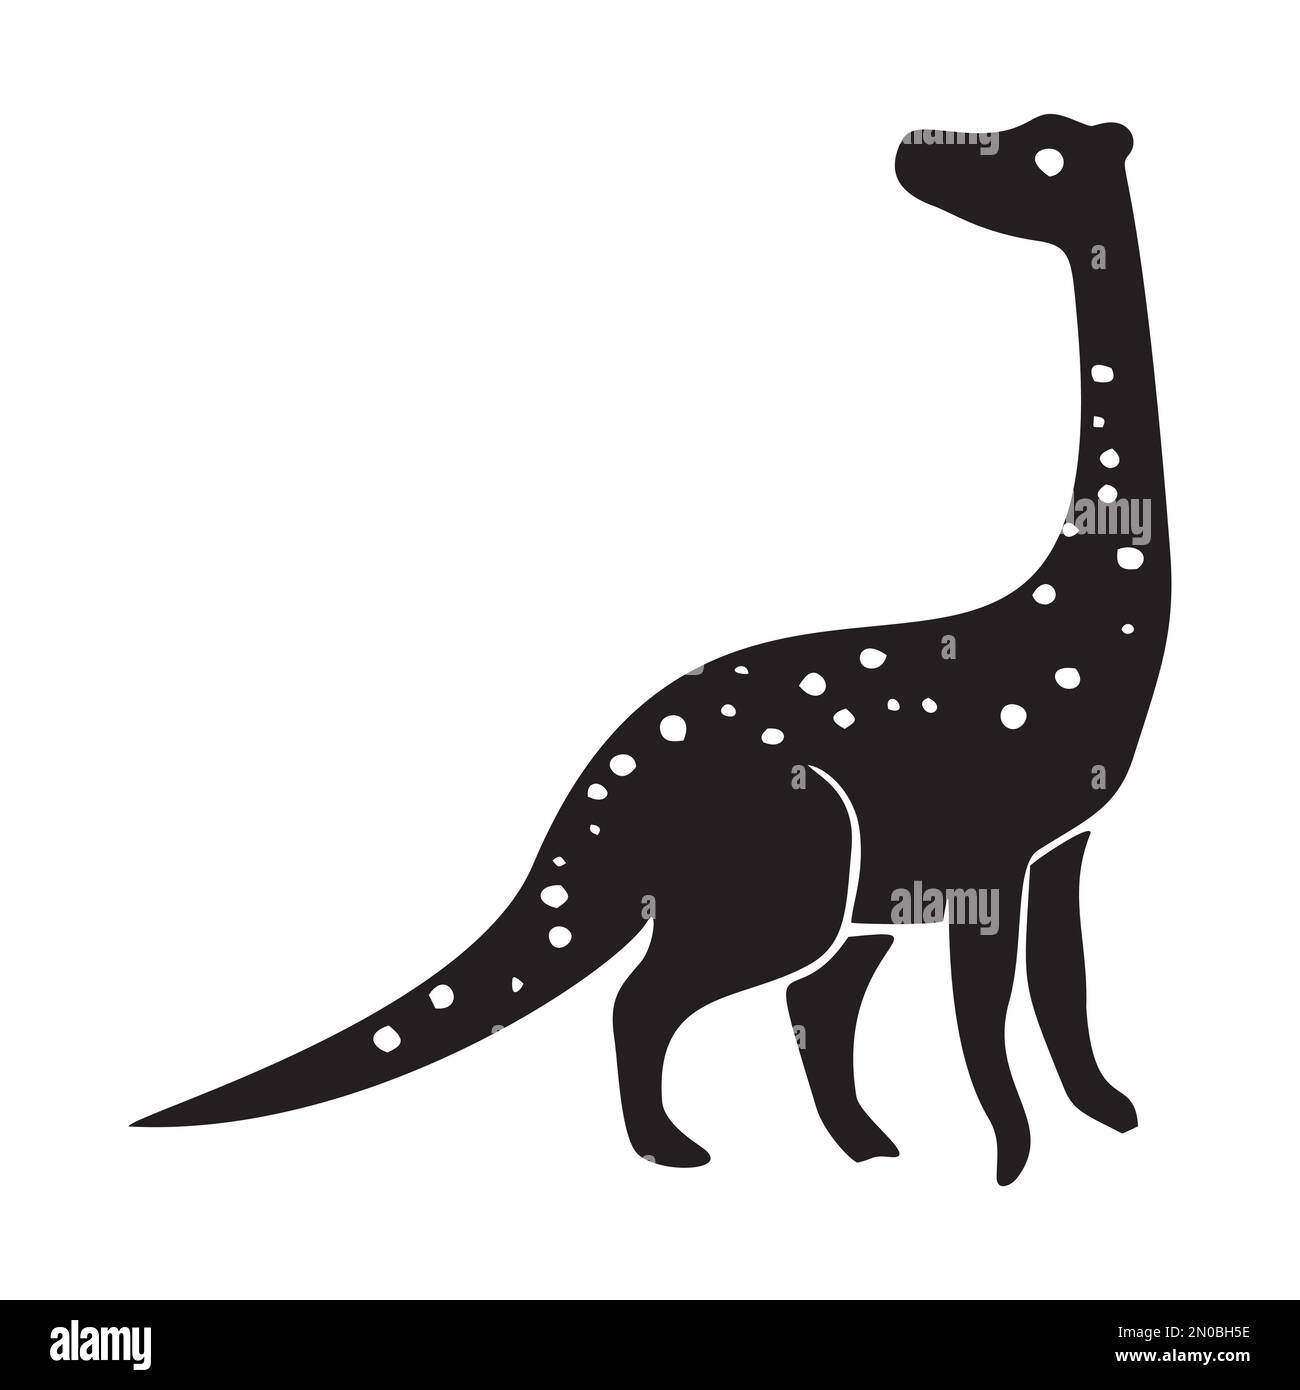 Süßes Dinosaurier-Vektormotiv für Kinder. Handgezeichnete kindliche Paleo-Reptilien-Illustration für skurrile Kunst. Stock Vektor